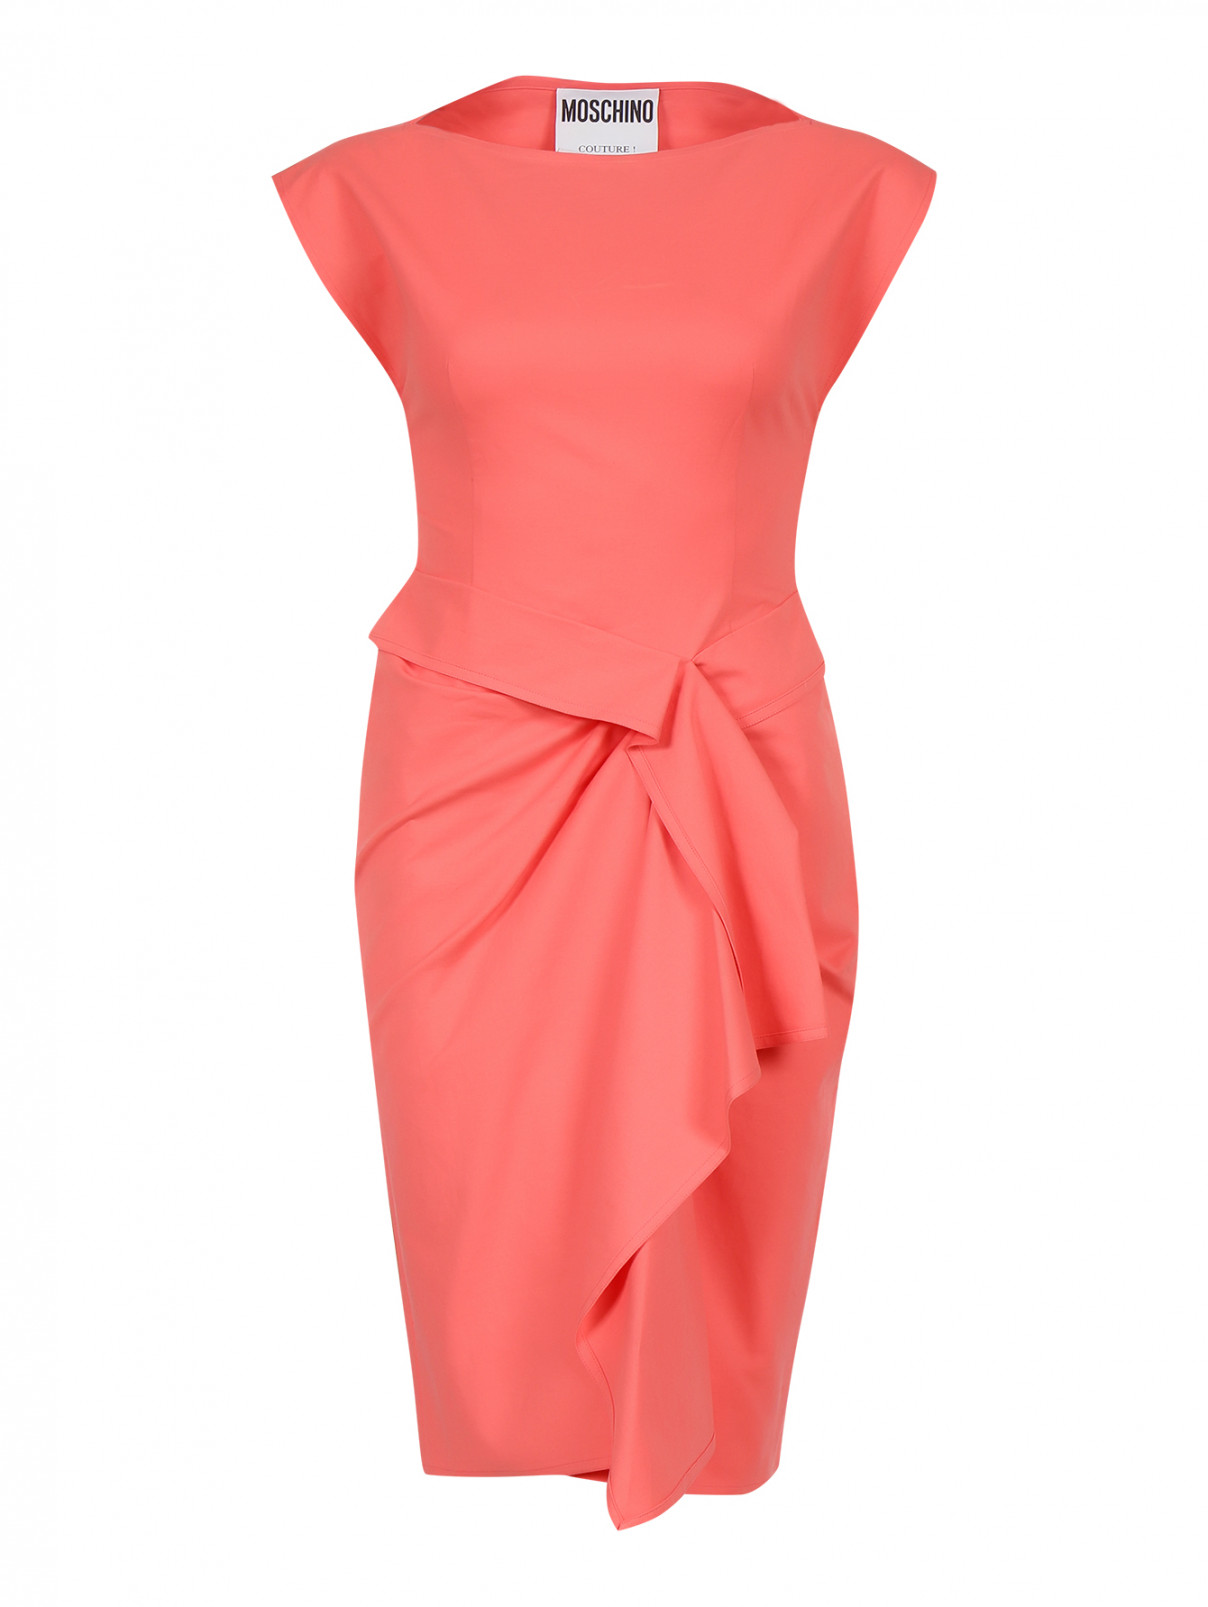 Платье-футляр без рукавов Moschino Couture  –  Общий вид  – Цвет:  Розовый